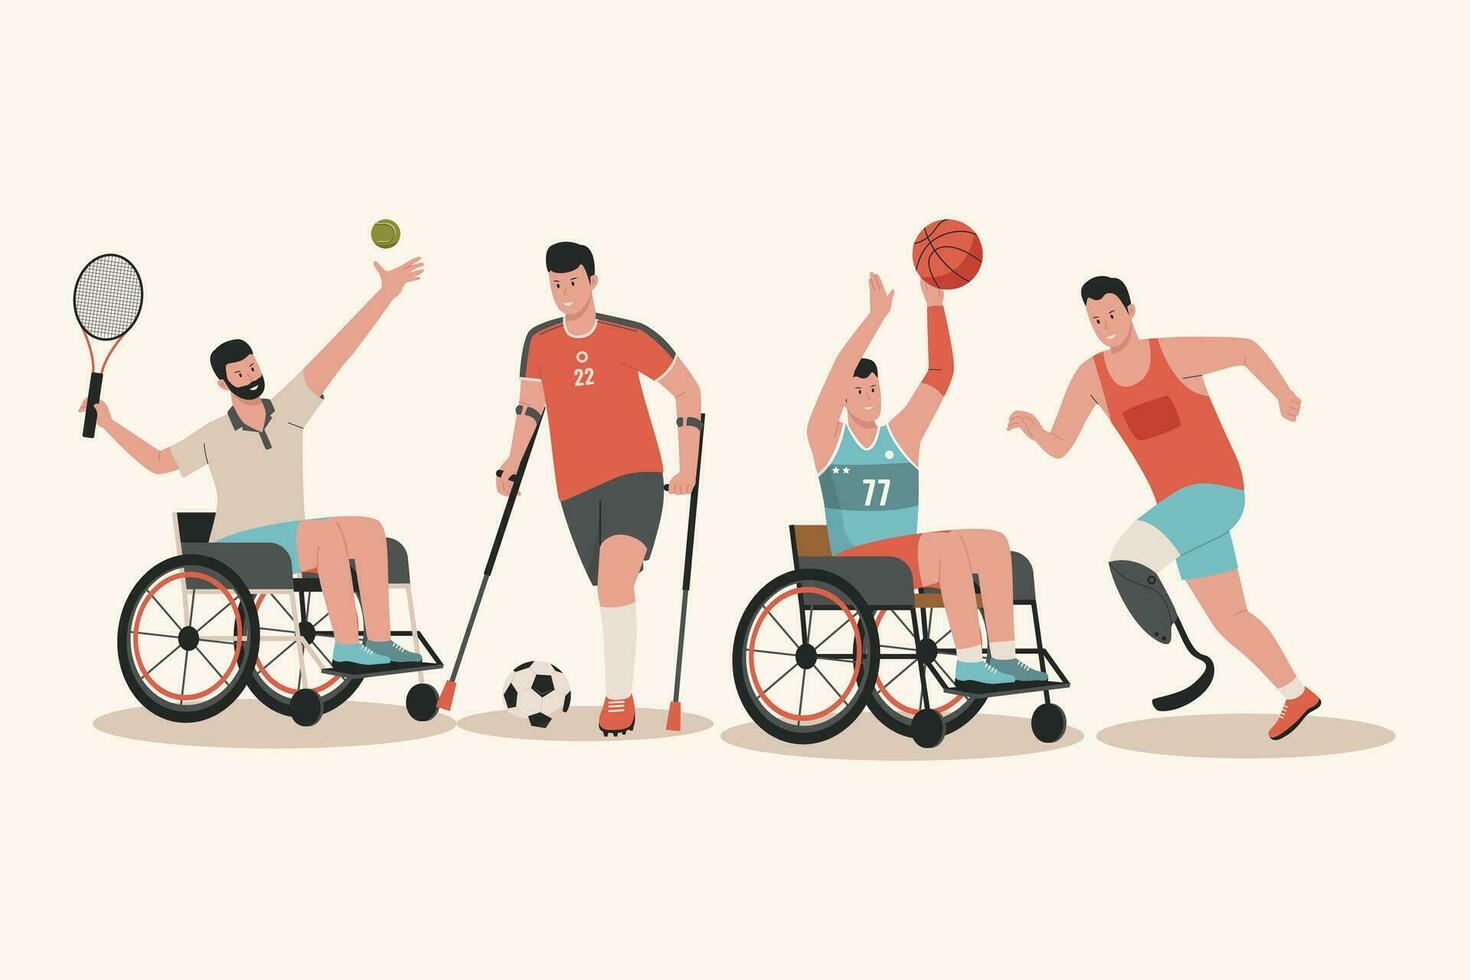 plano vector desde discapacitado masculino atleta colección